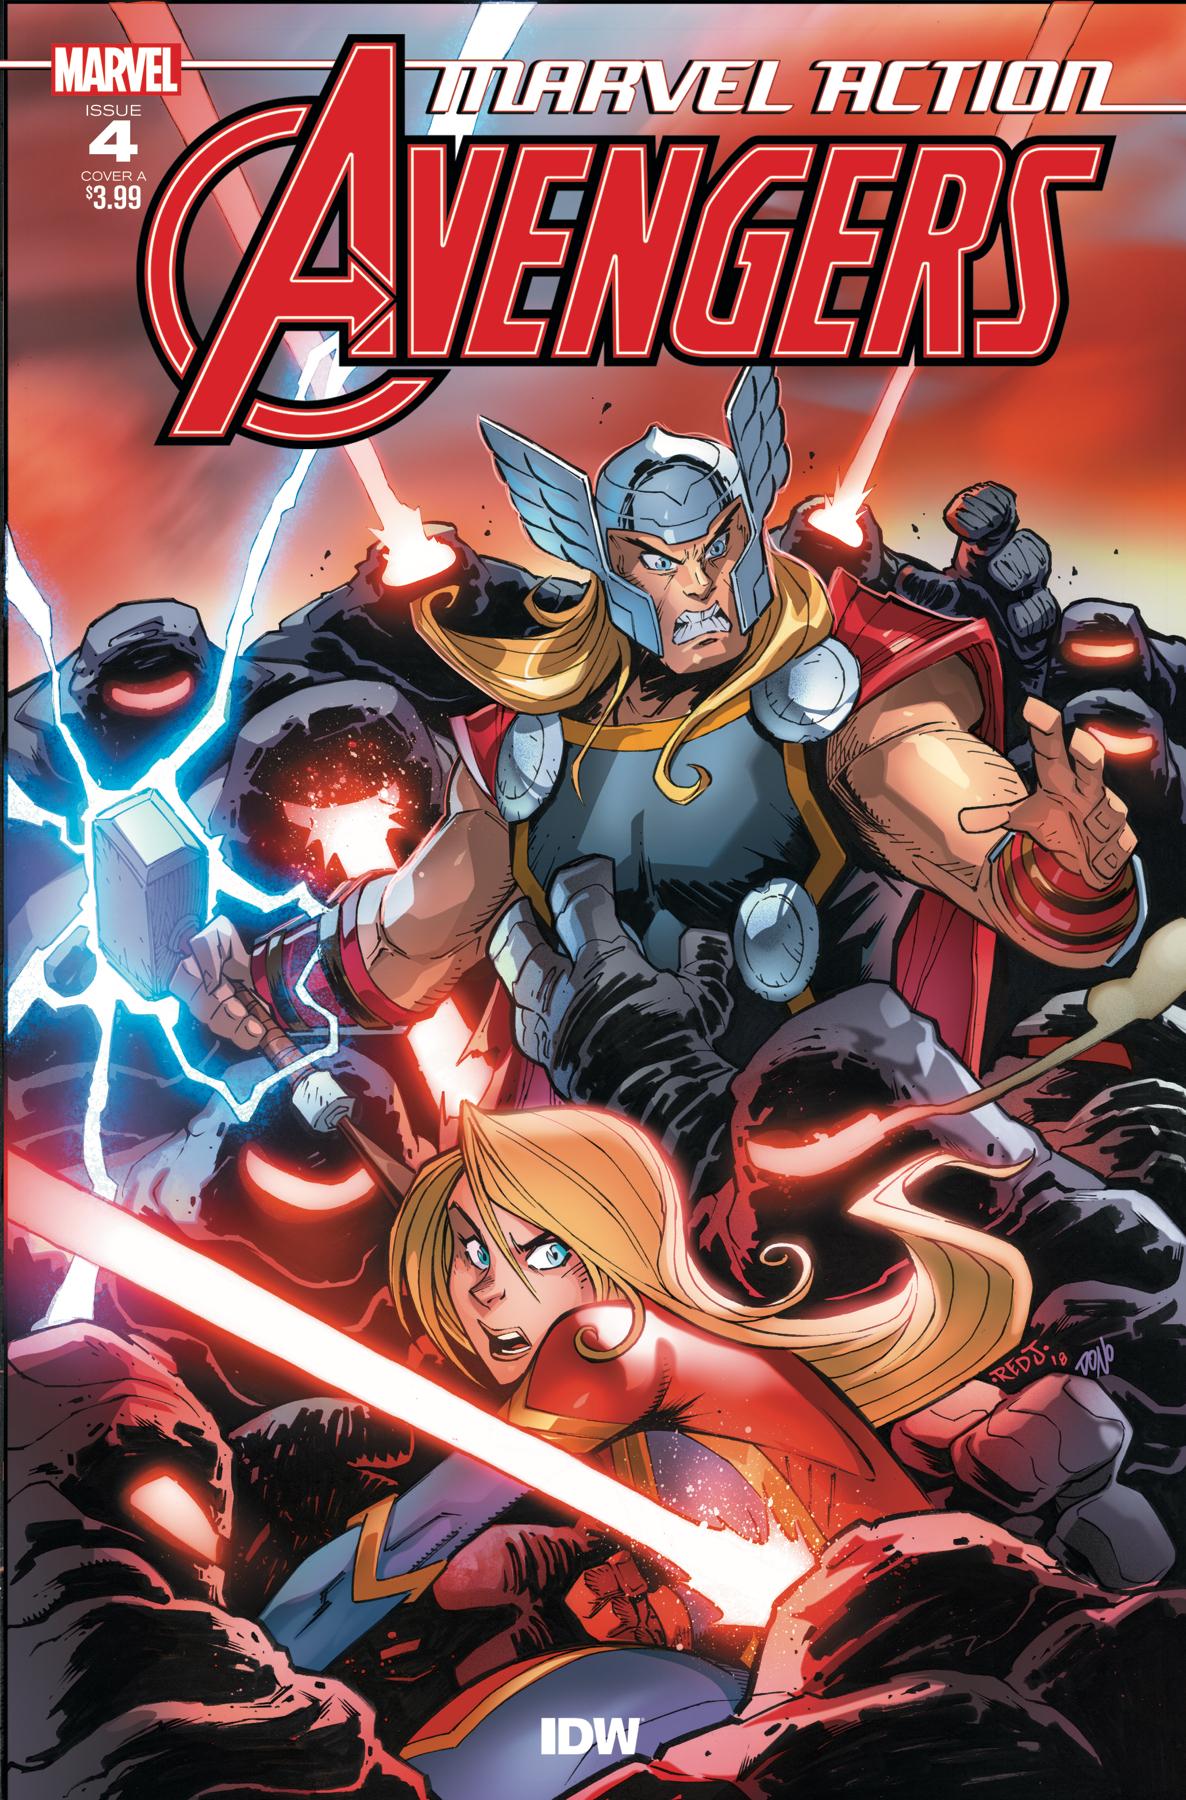 Marvel Action: Avengers Vol. 1 #4